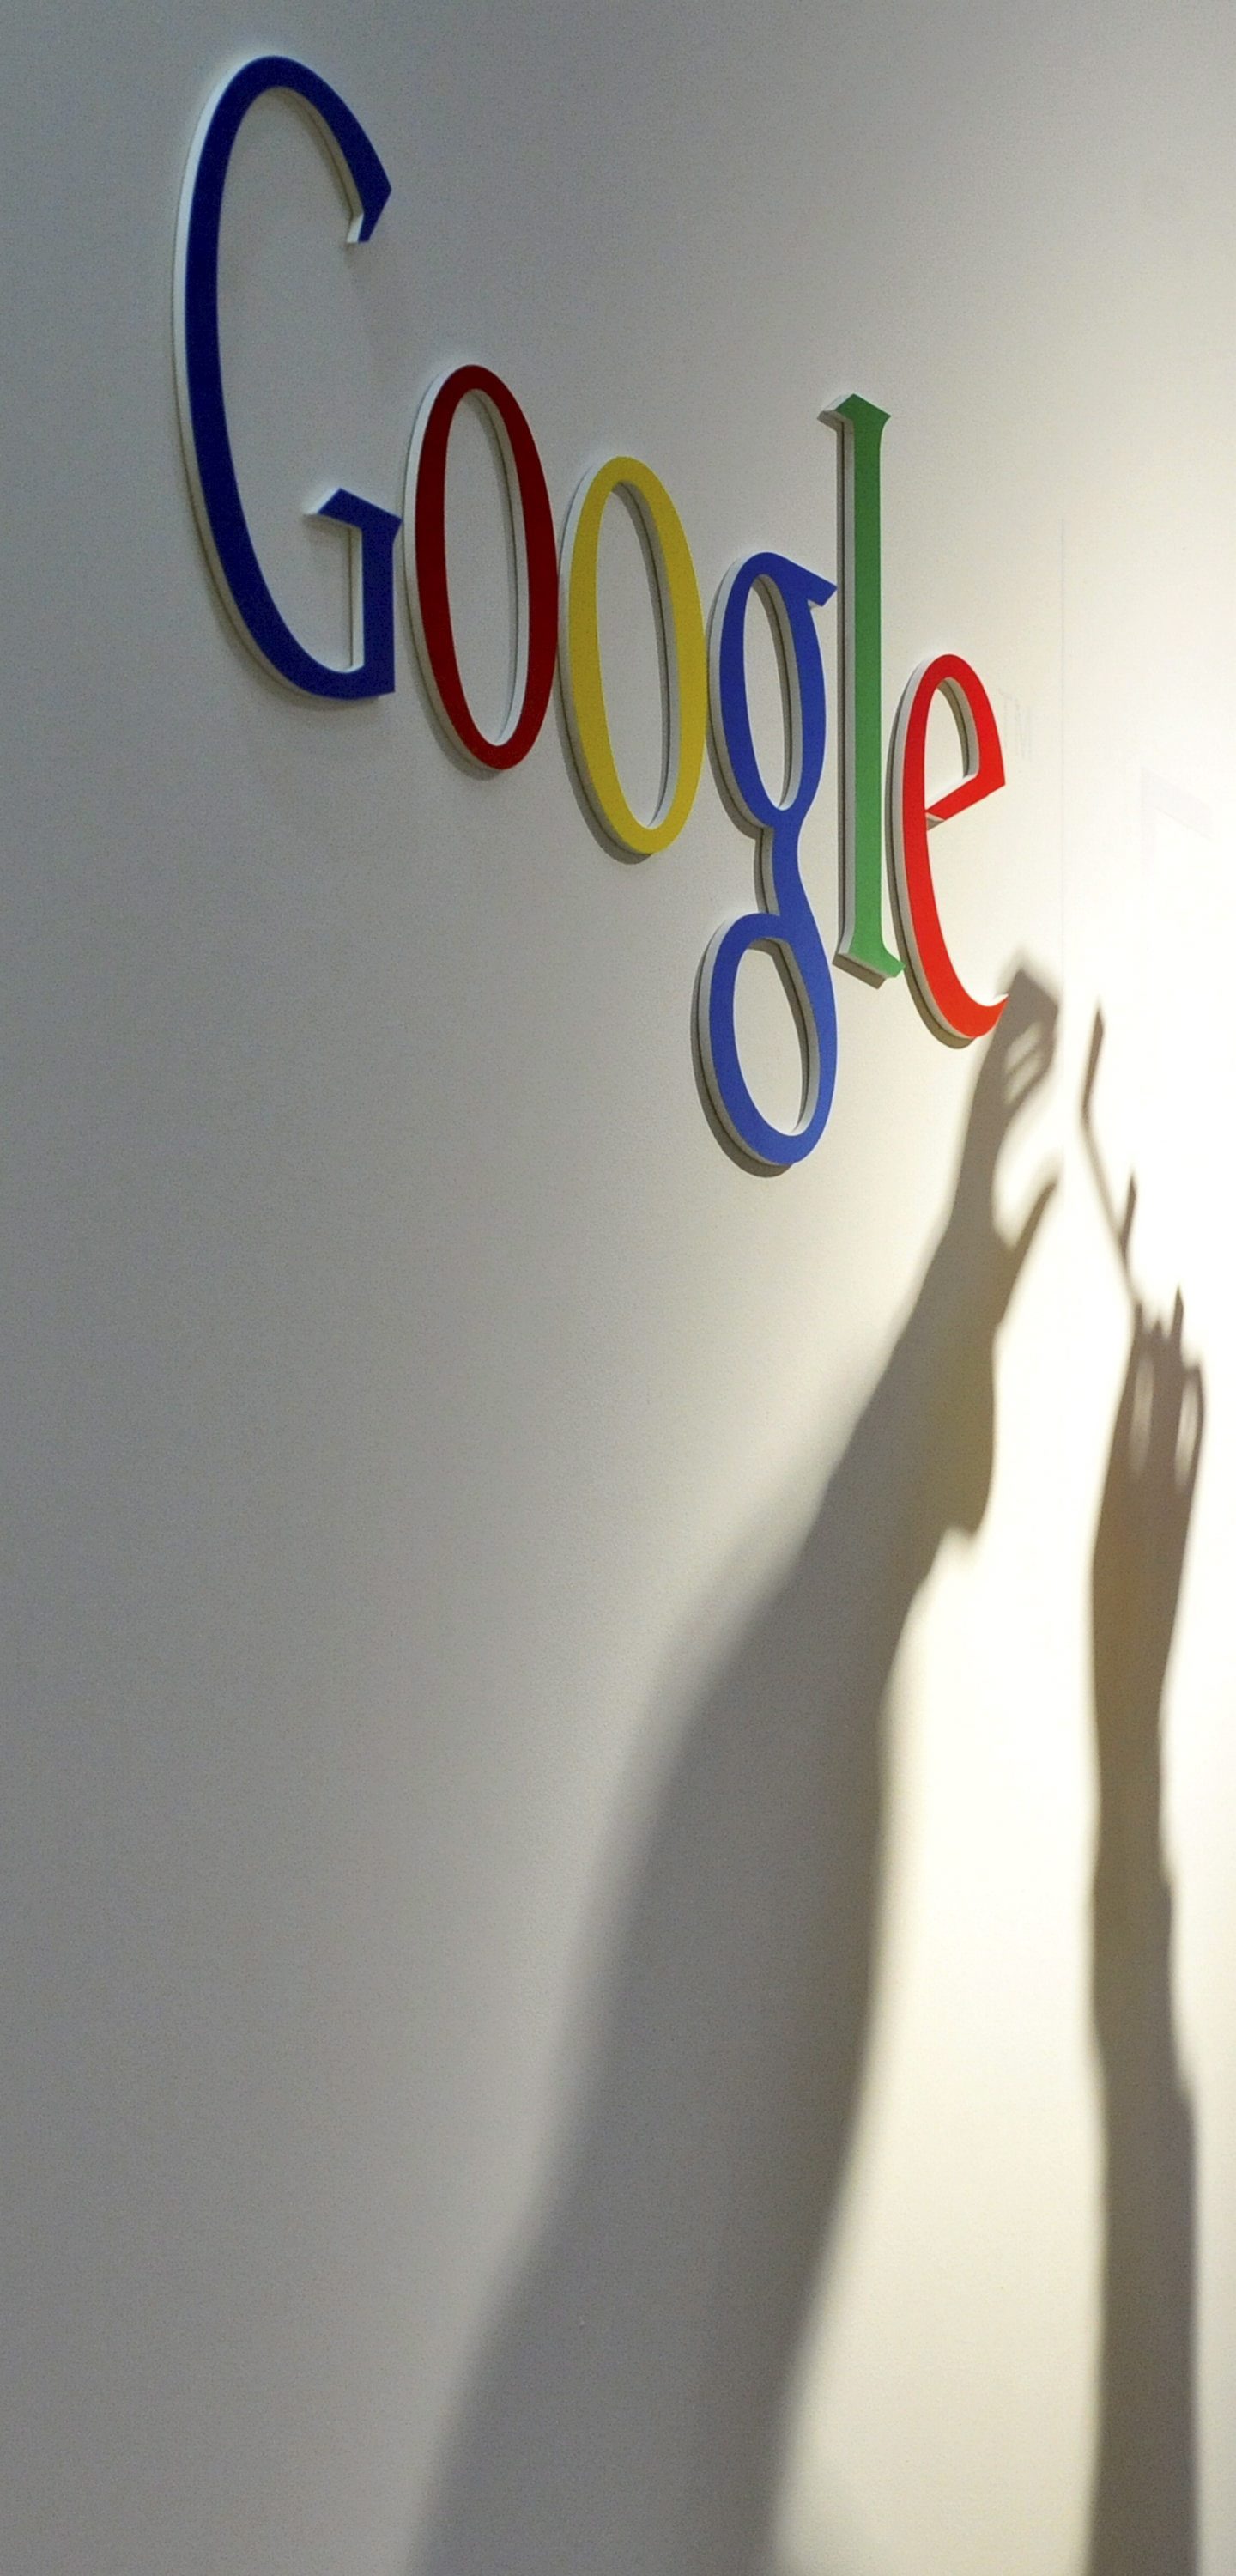 Google вече ще дава награди за открити пропуски в Chrome целогодишно